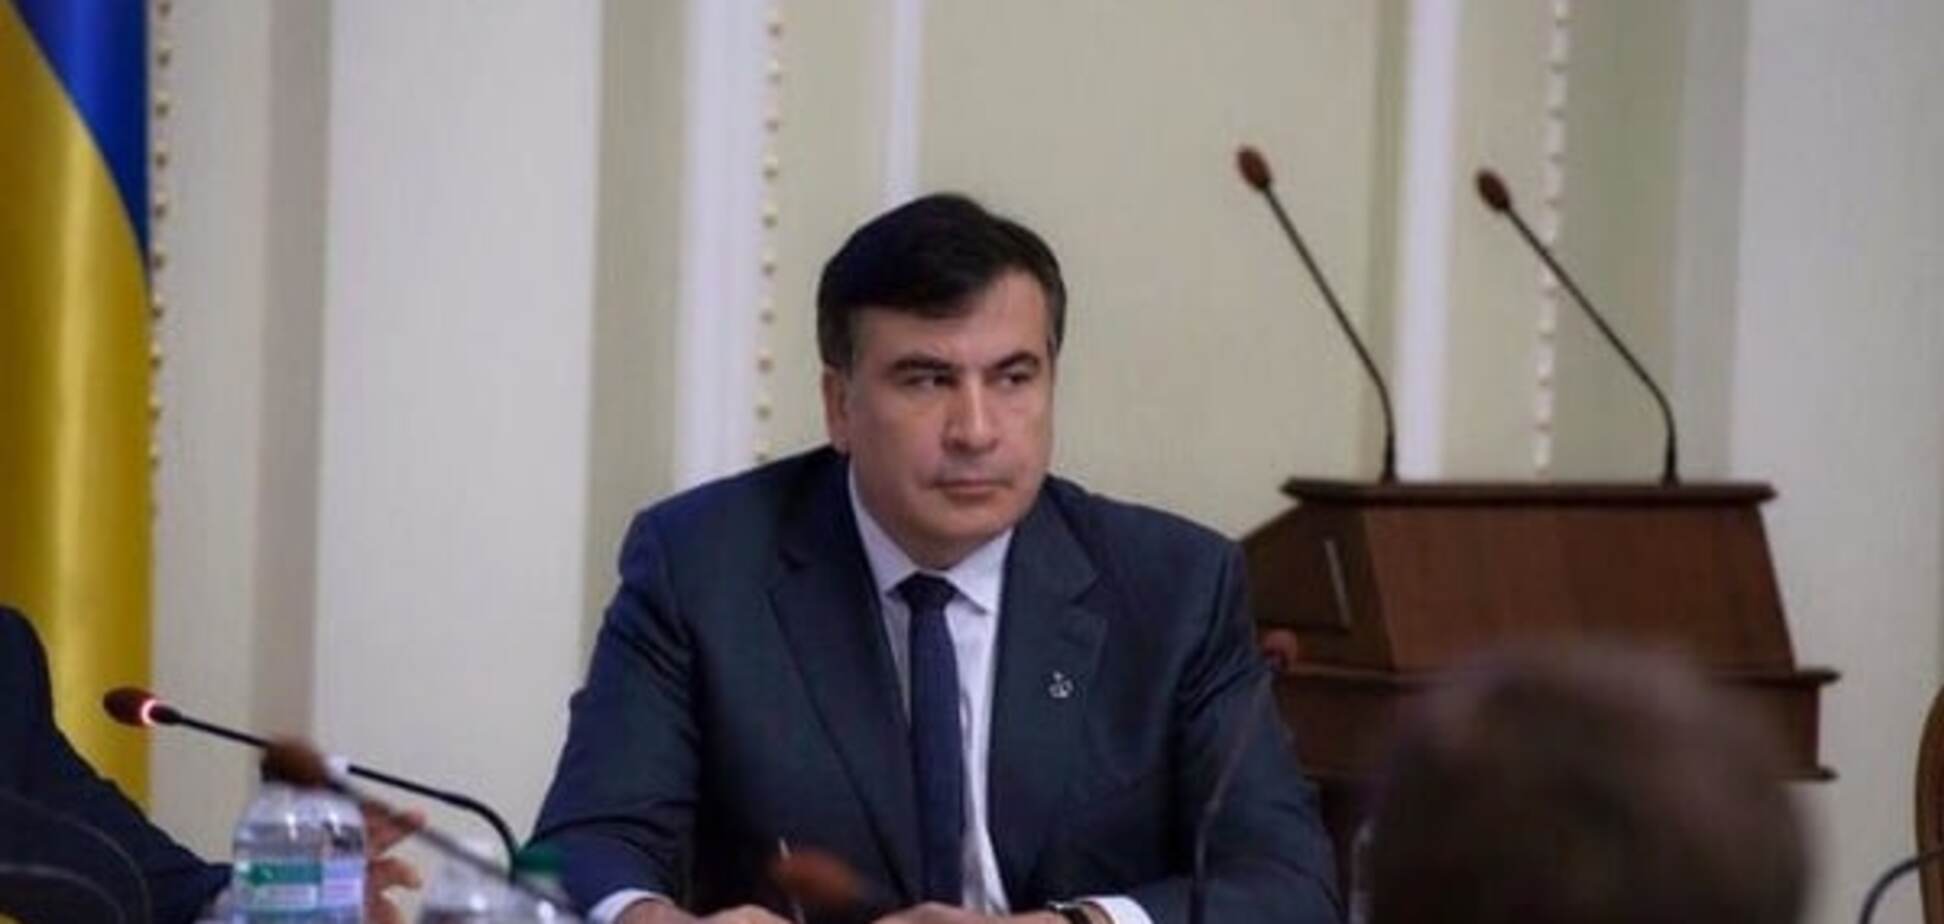 У Саакашвили обошли закон о госзакупках, чтобы 'освоить' 17 миллионов